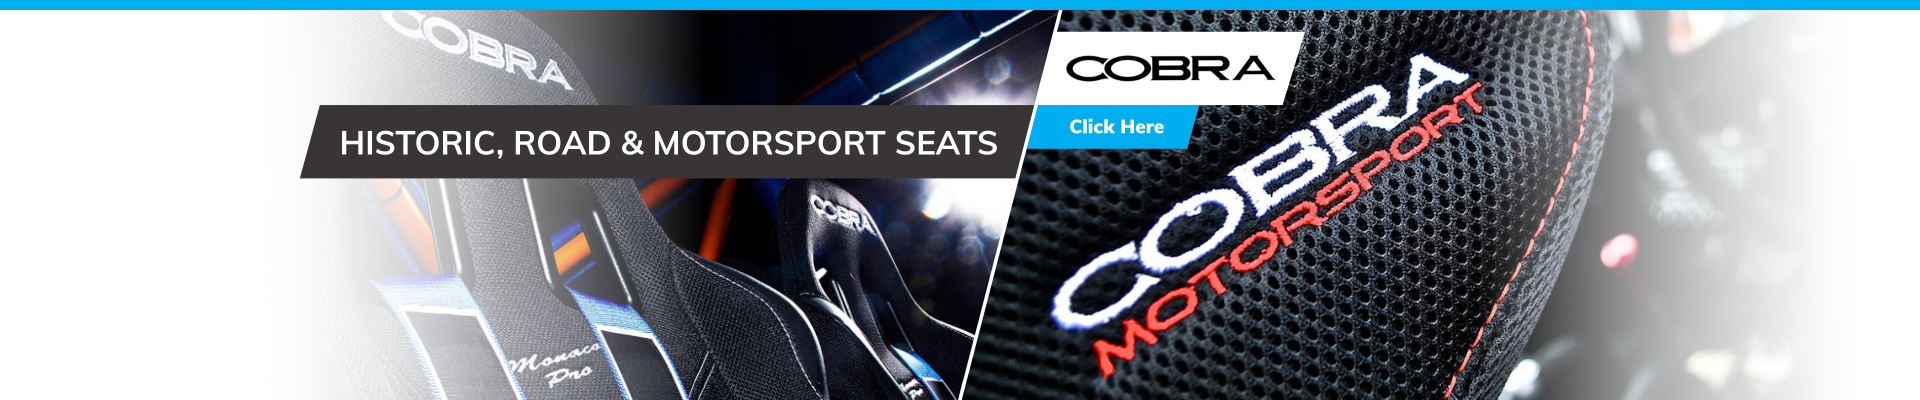 Cobra - Historic, Road, and Motorsport Seats